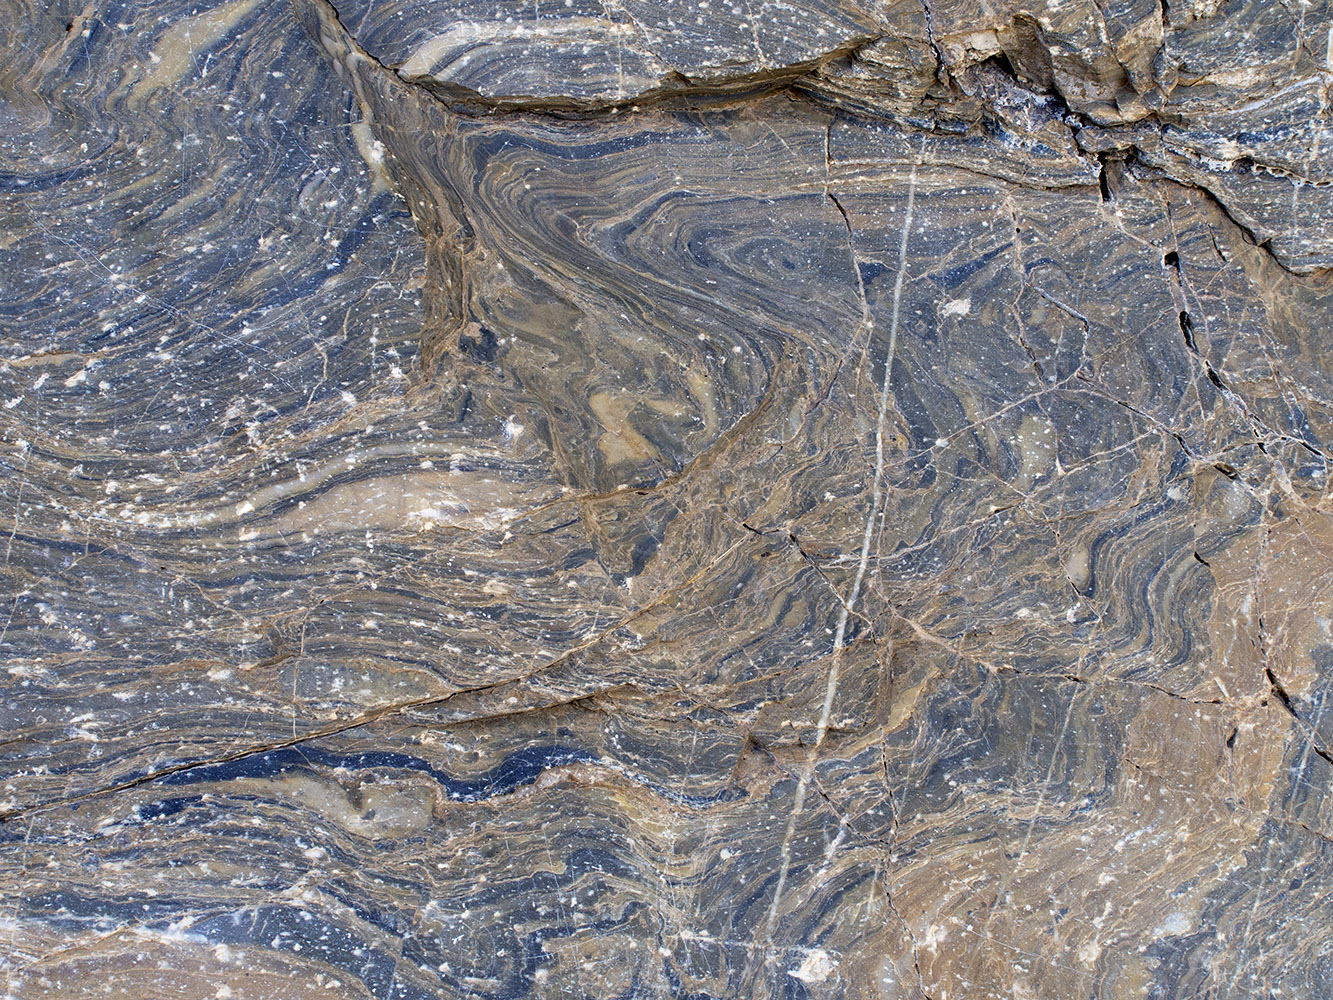 Mosaic Canyon – Polished dolomite marble; dry.